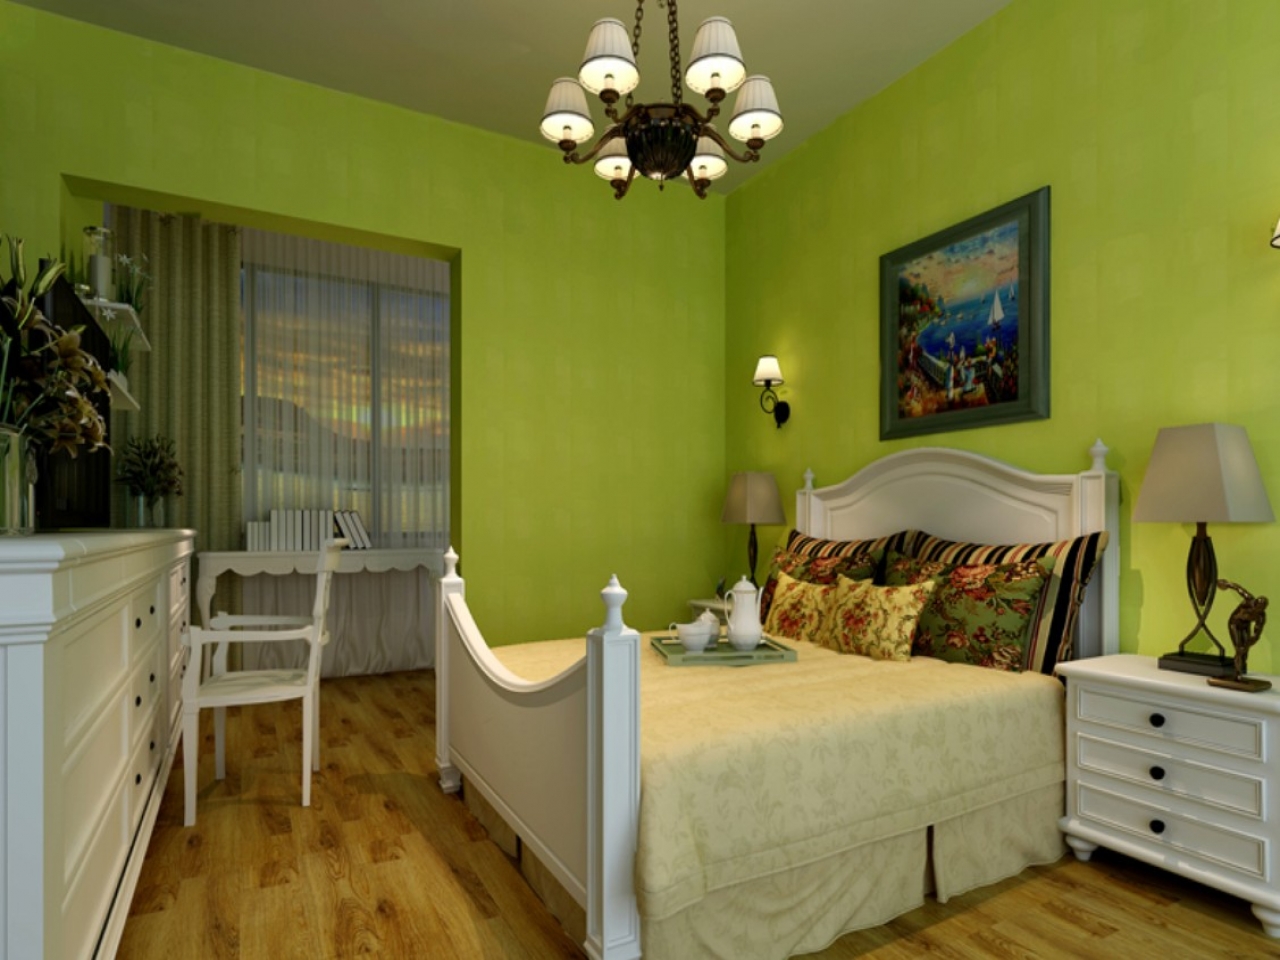 Фото дизайн спальни в зеленых тонах фото